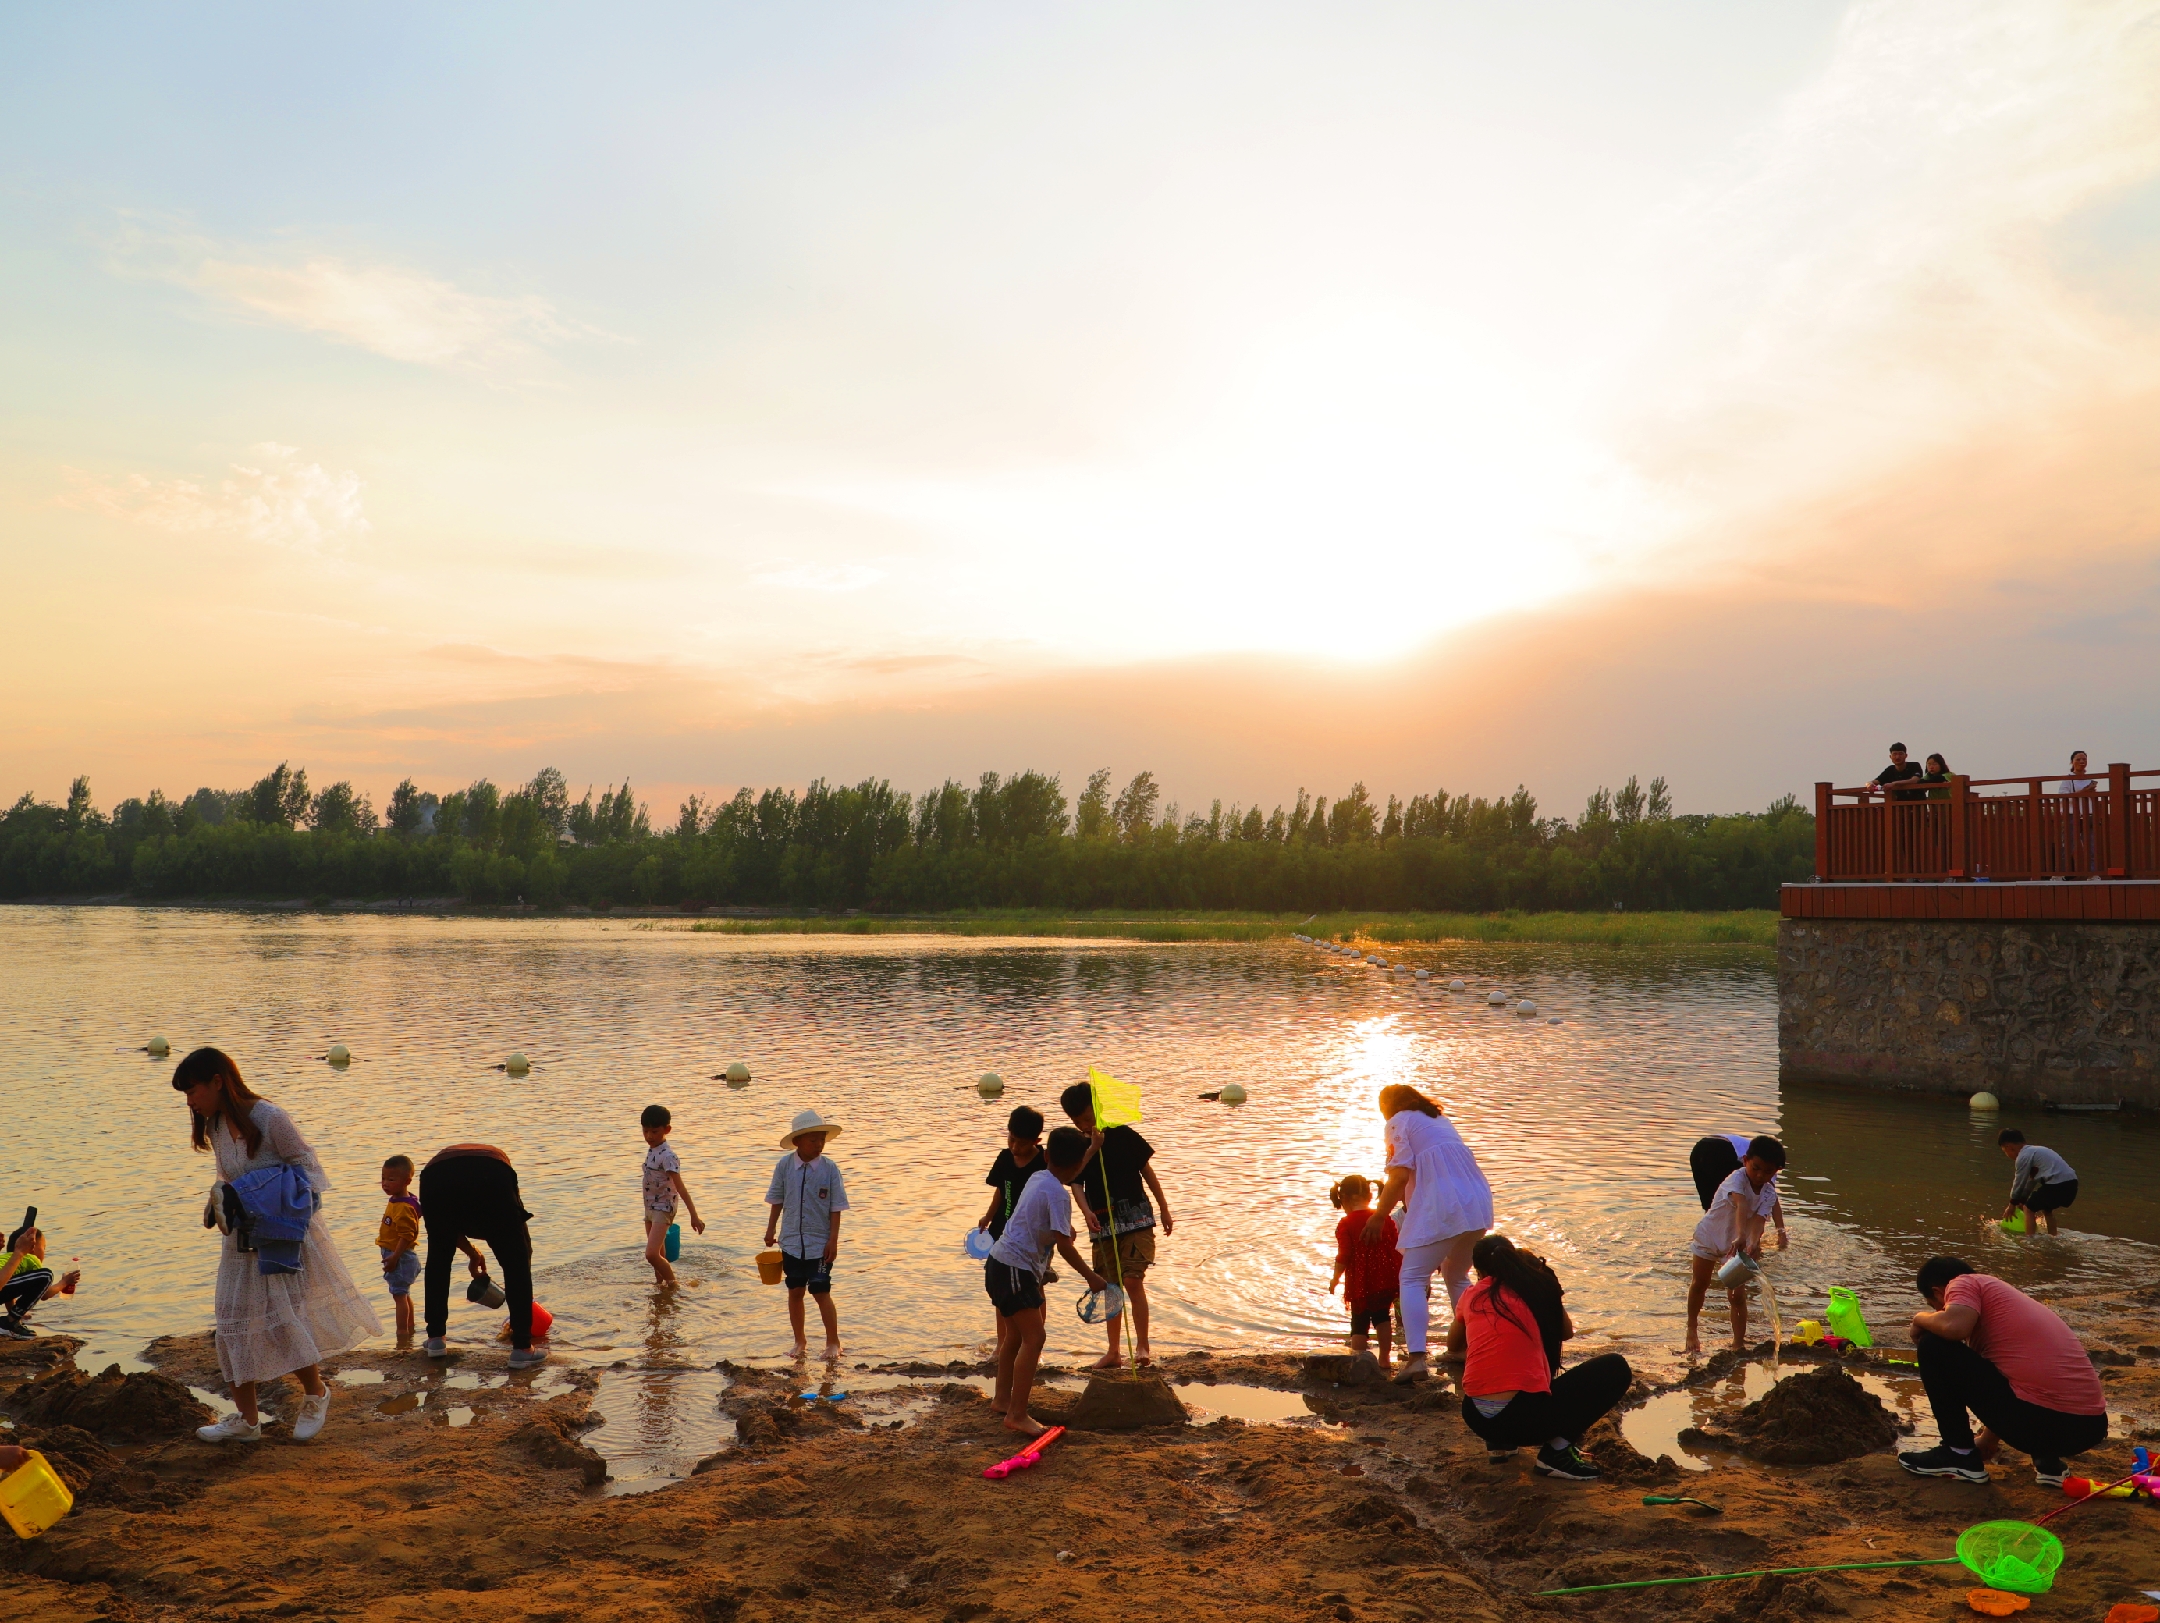 可是河南省鹤壁市淇滨区淇河滩上,孩子们全然不顾,都在兴致勃勃地